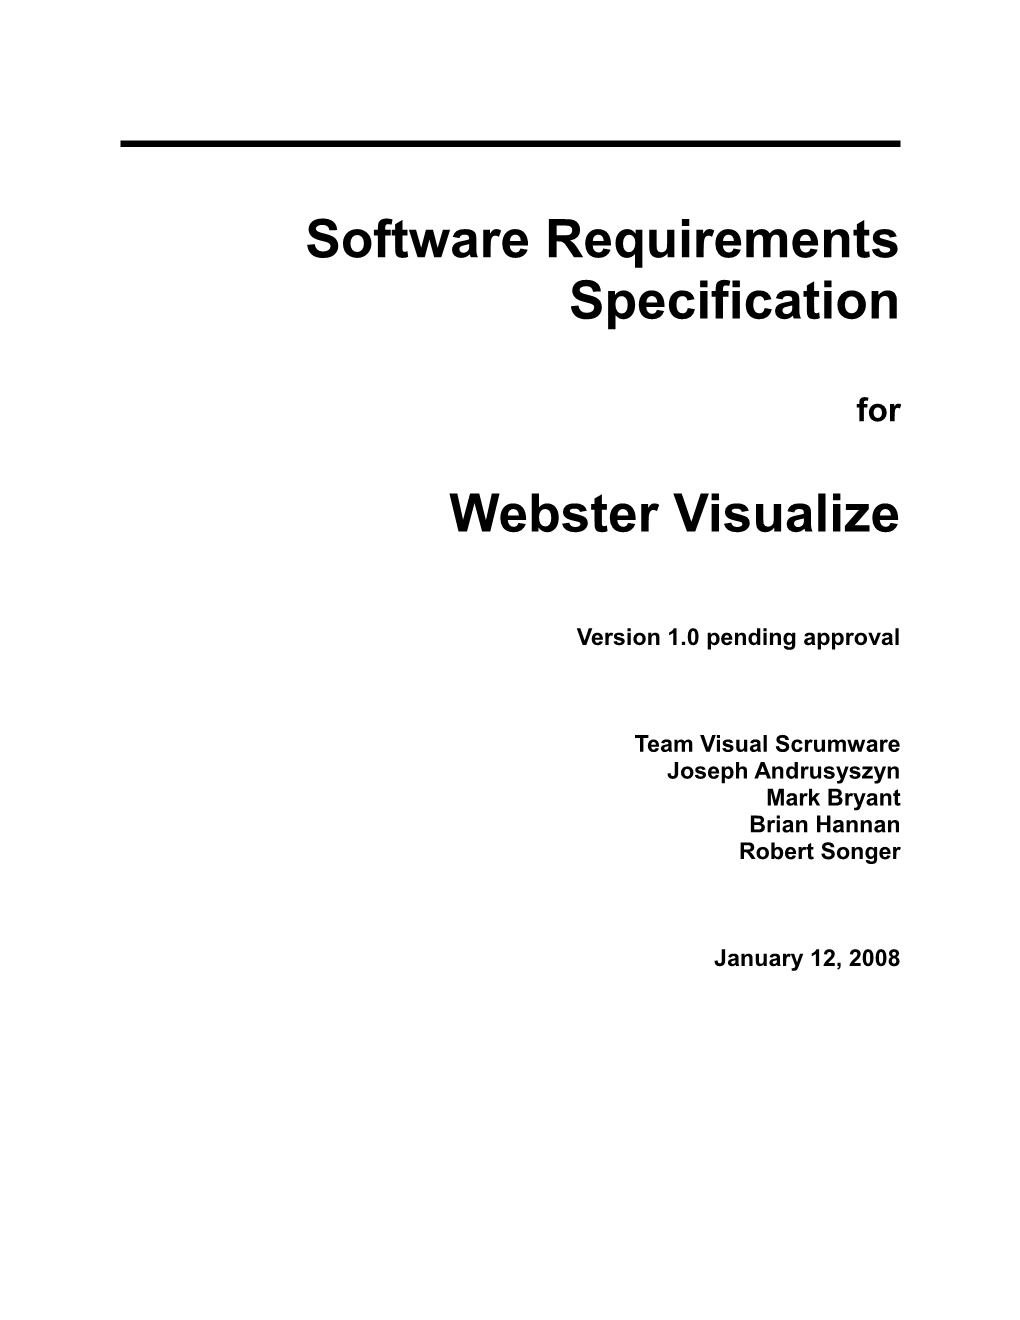 SRS for Webster Visualize